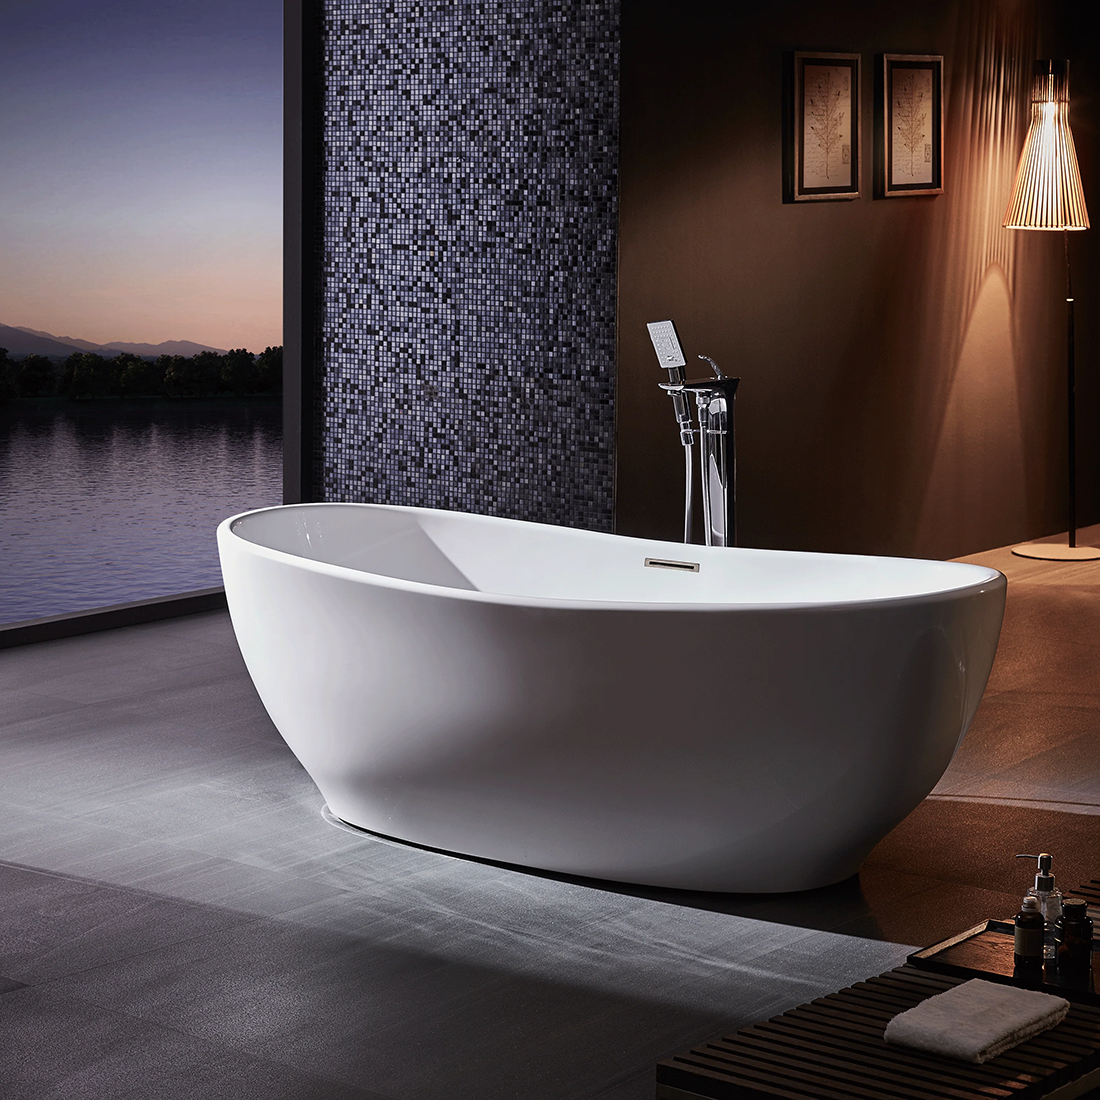 Acrylic Bathtub for elegant bathroom space